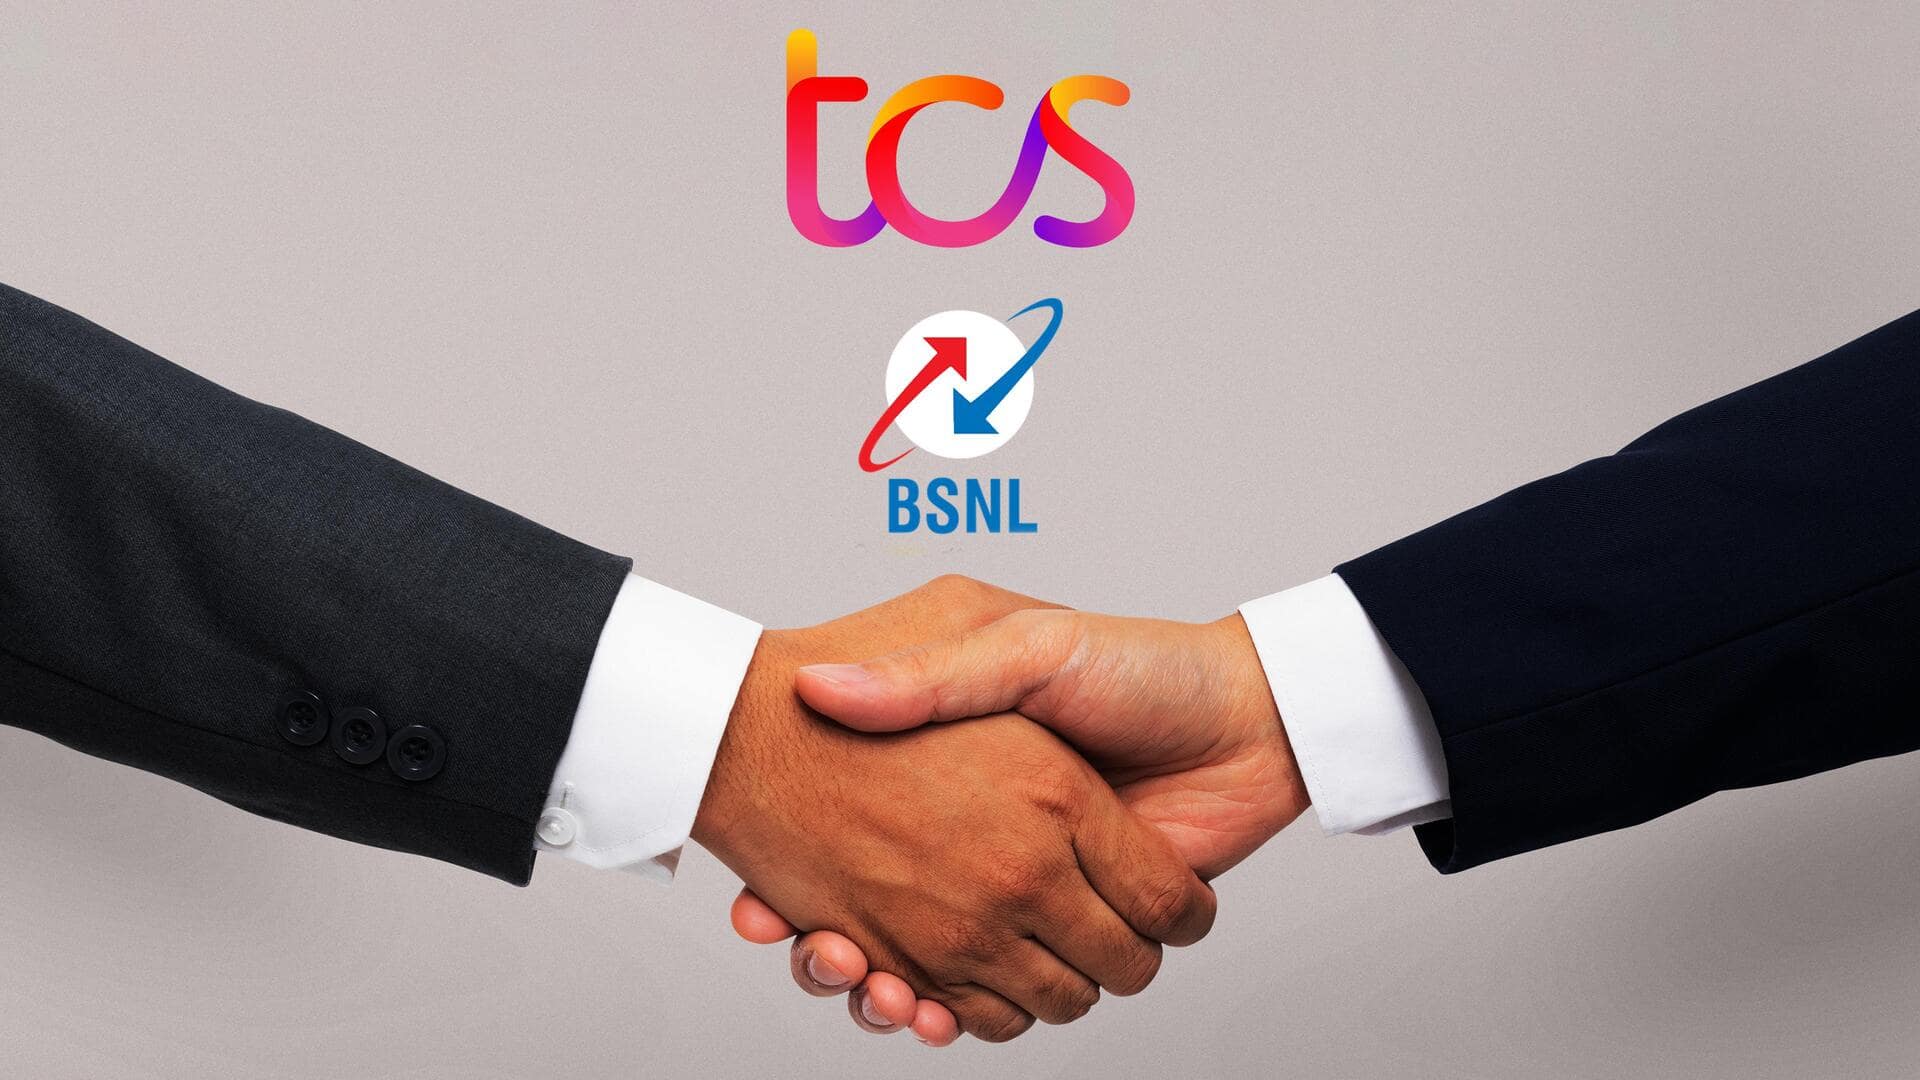 BSNL के 4G नेटवर्क पर तेज होगा काम, TCS को मिला 15,000 करोड़ रुपये का ऑर्डर